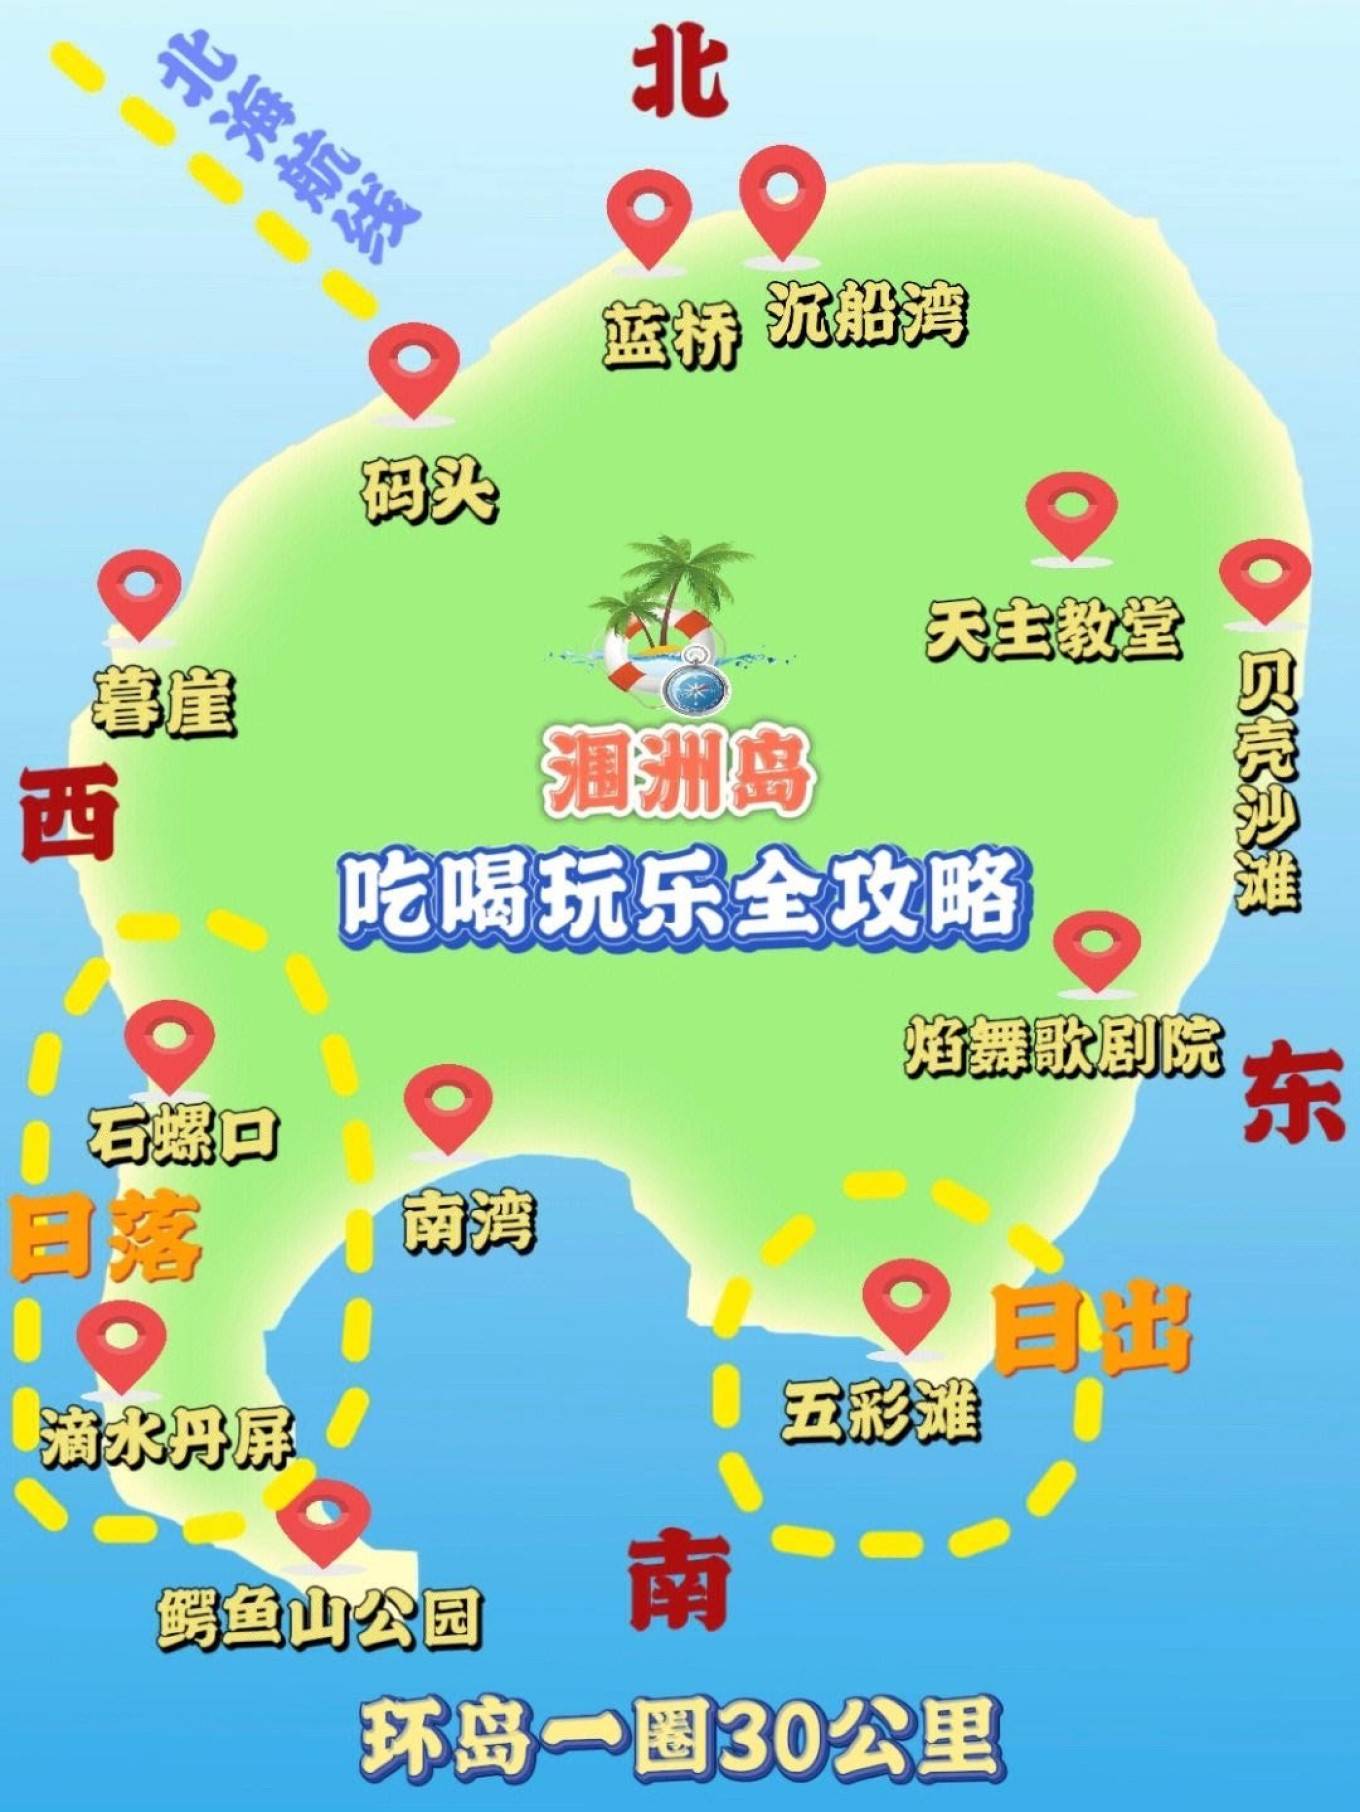 海口旅游地图全景图图片